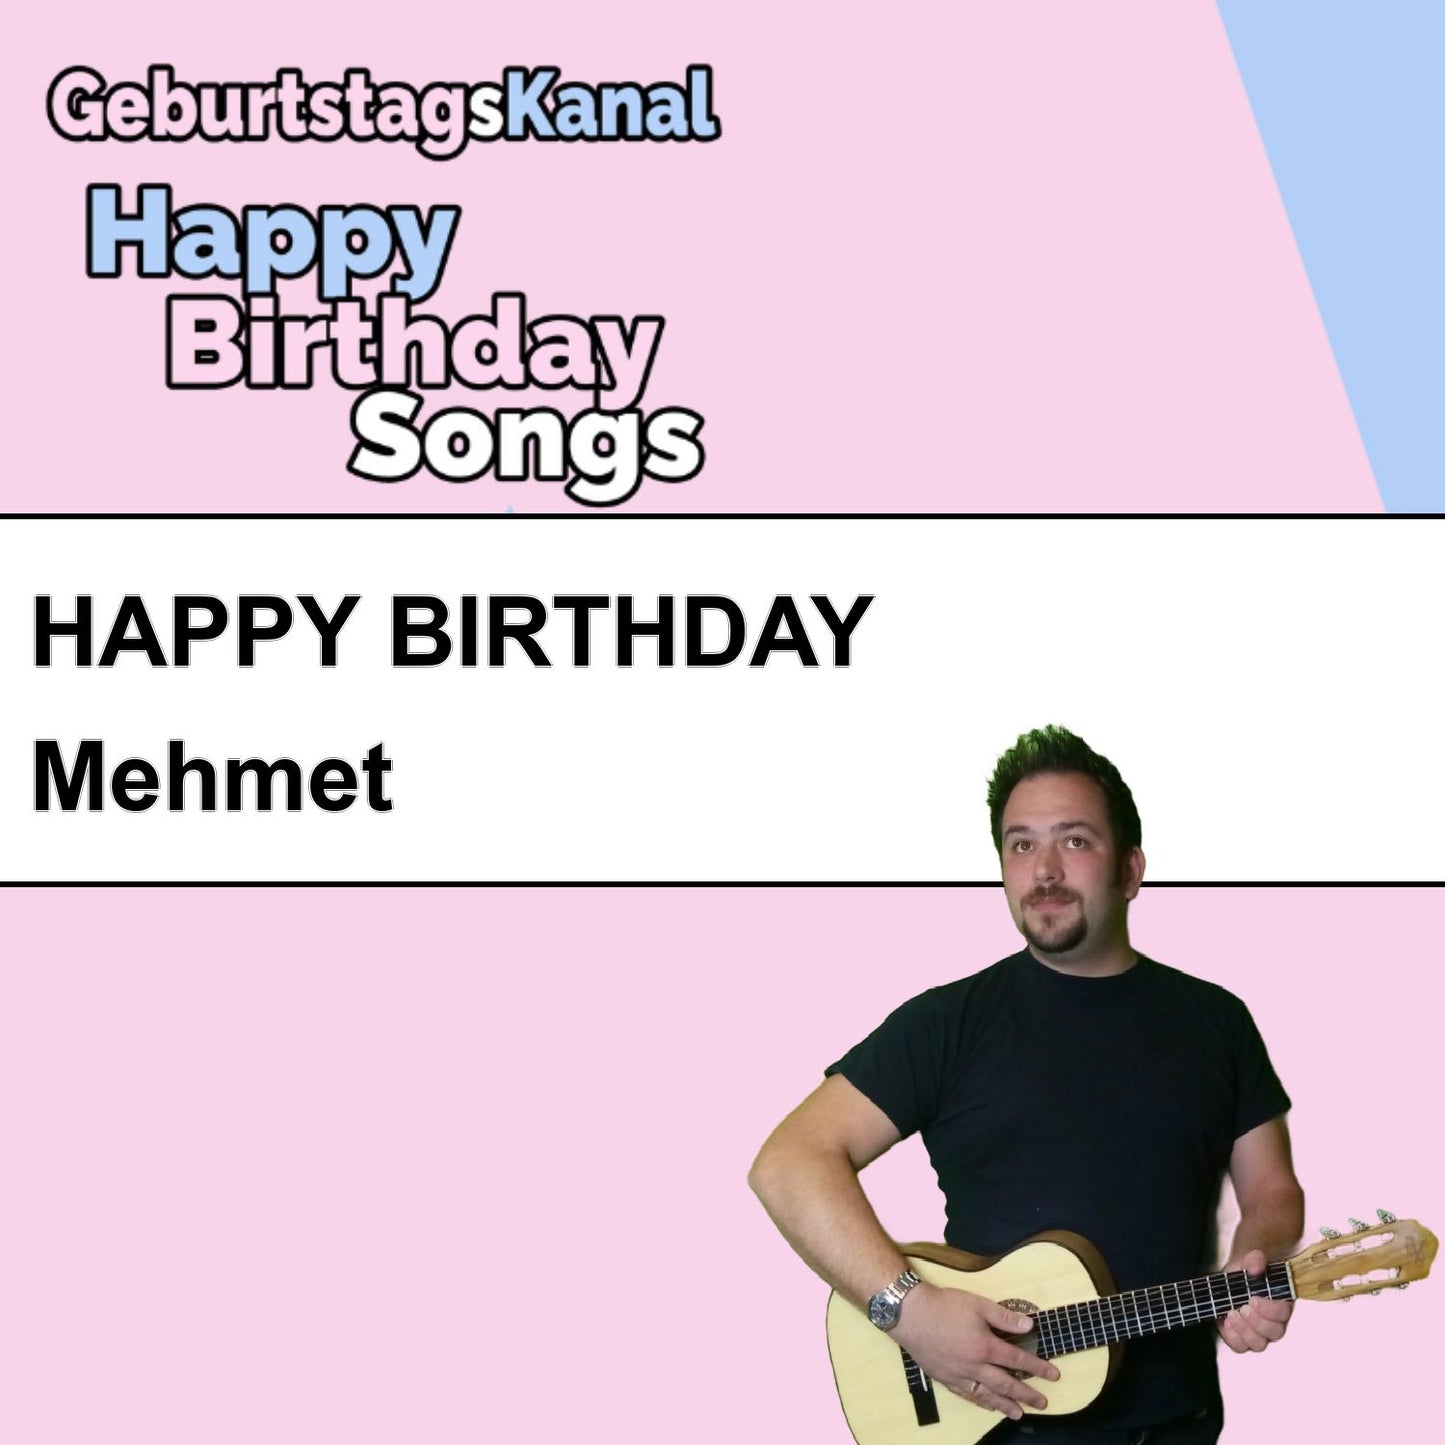 Produktbild Happy Birthday to you Mehmet mit Wunschgrußbotschaft